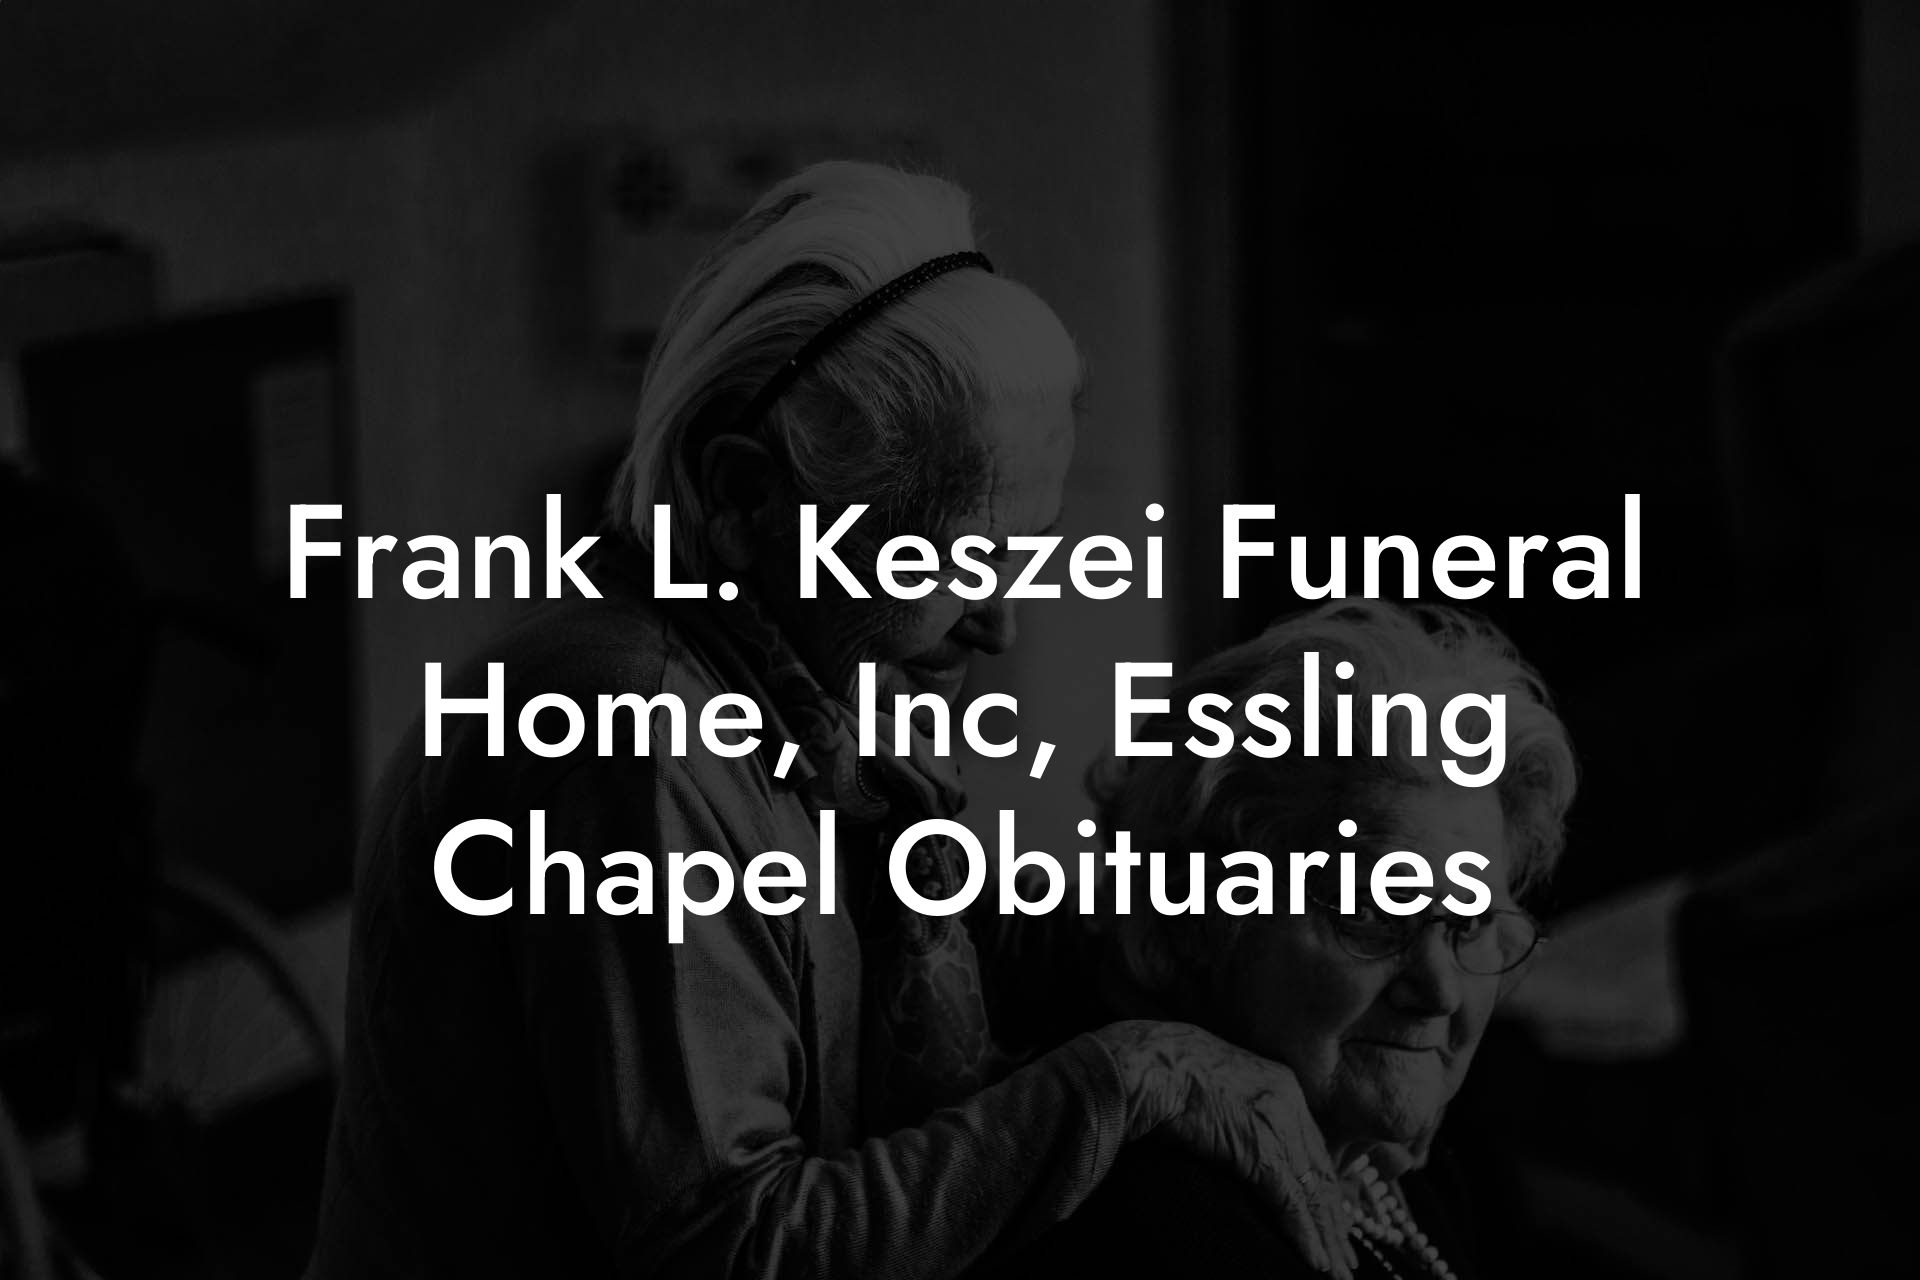 Frank L. Keszei Funeral Home, Inc, Essling Chapel Obituaries